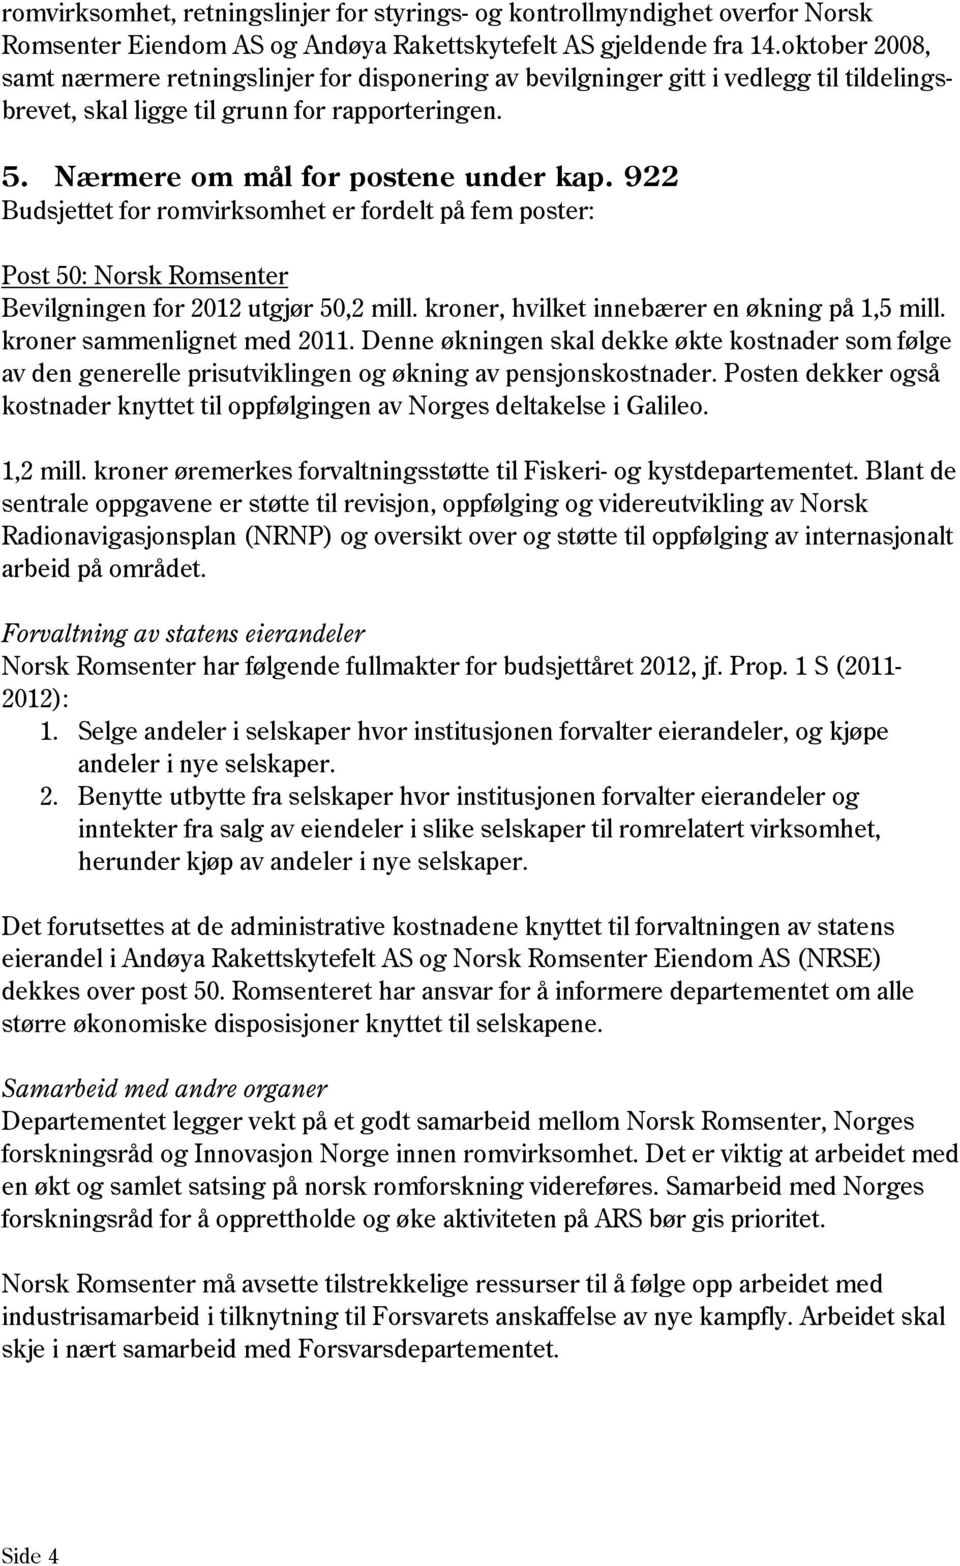 922 Budsjettet for romvirksomhet er fordelt på fem poster: Post 50: Norsk Romsenter Bevilgningen for 2012 utgjør 50,2 mill. kroner, hvilket innebærer en økning på 1,5 mill.